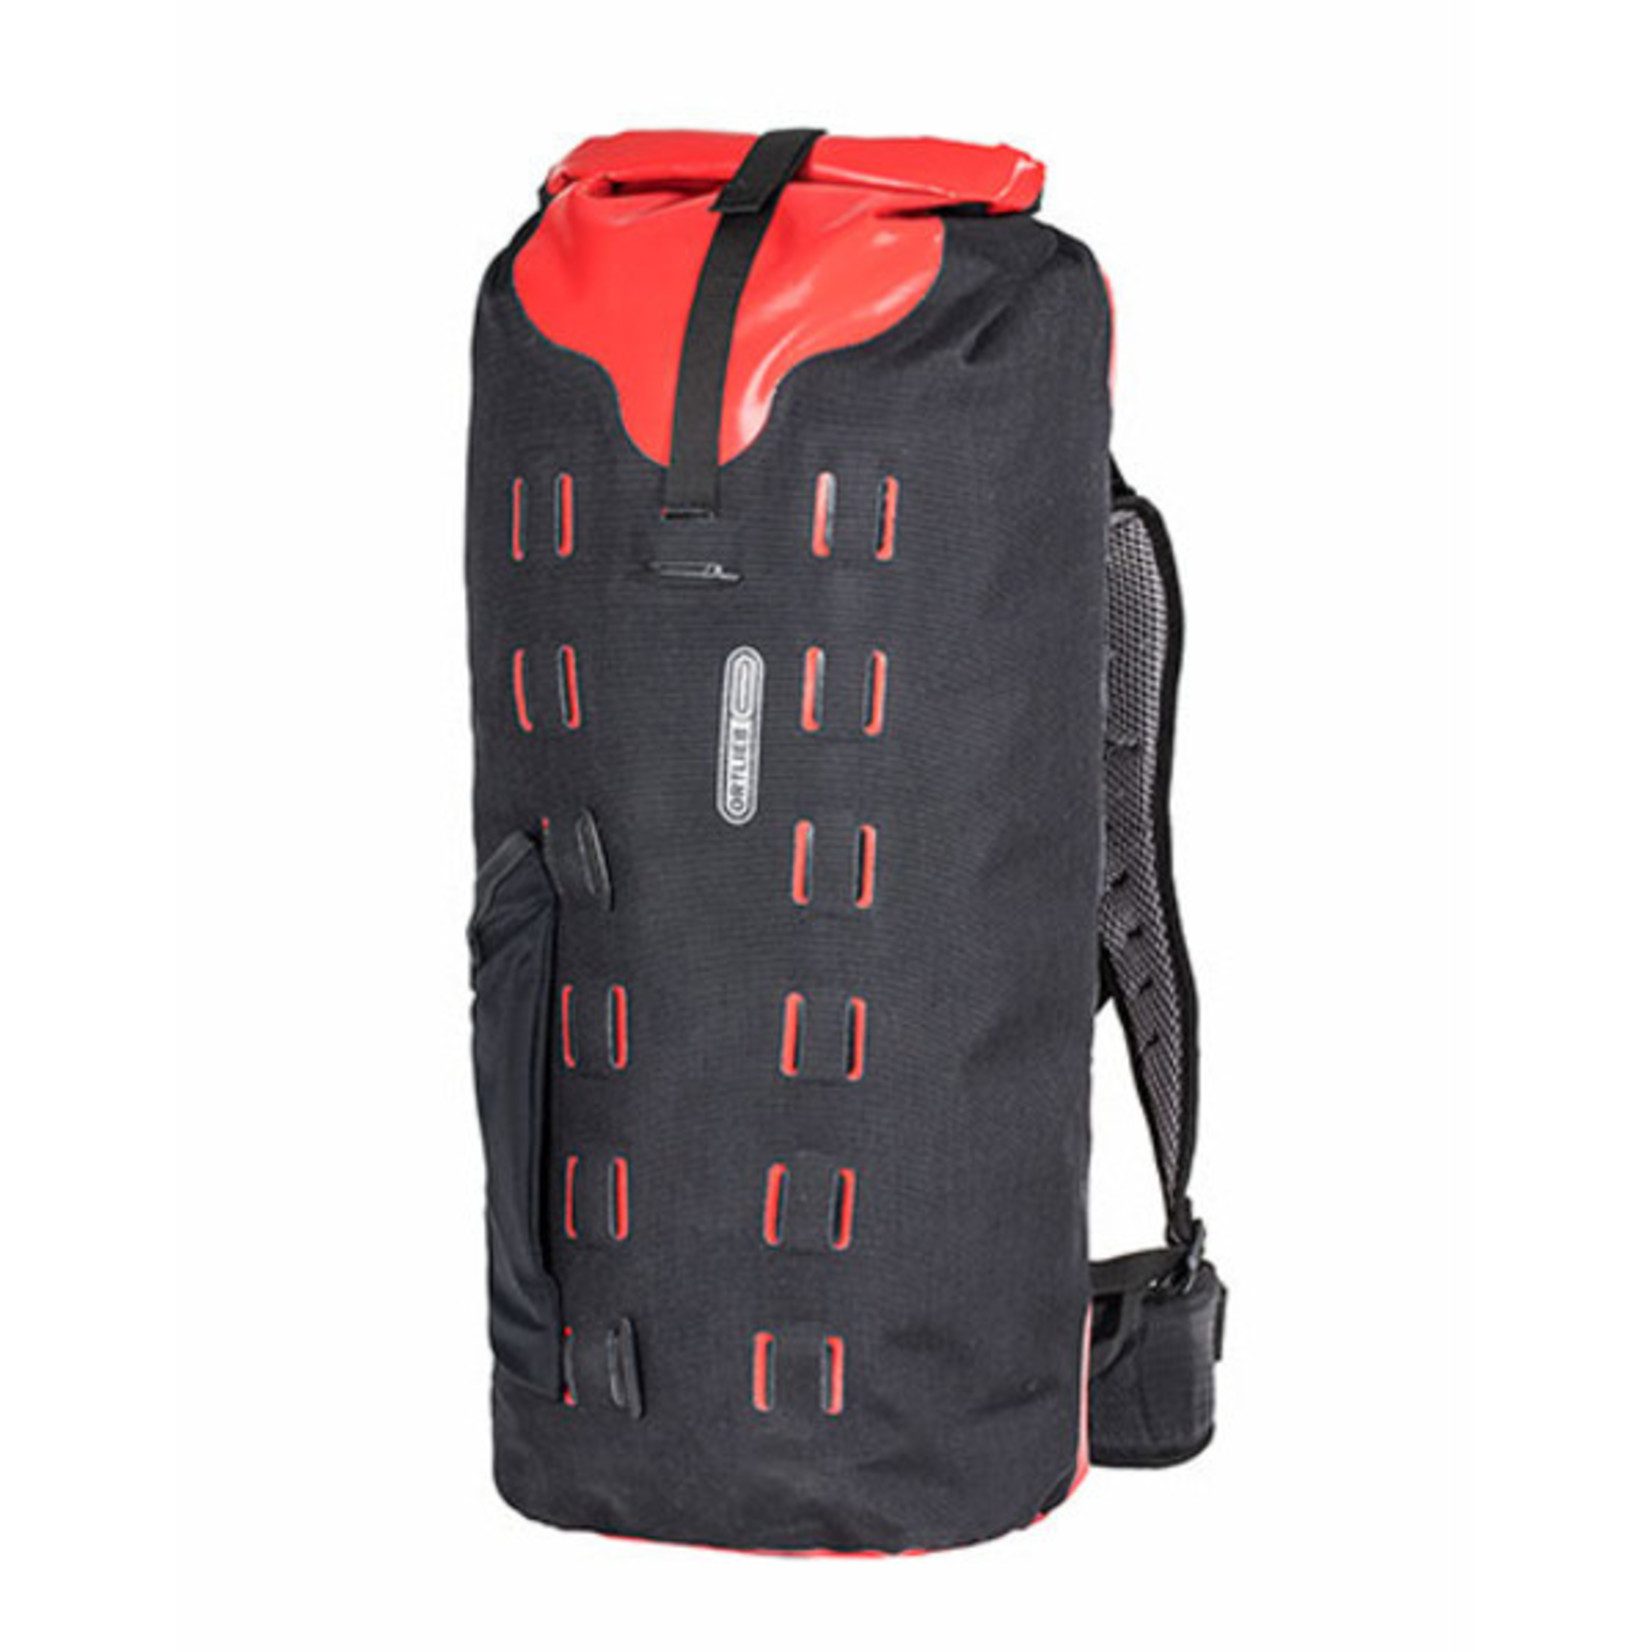 Ortlieb New Ortlieb r17103 Gear-Pack Backpack Waterproof - 32L Black-Red